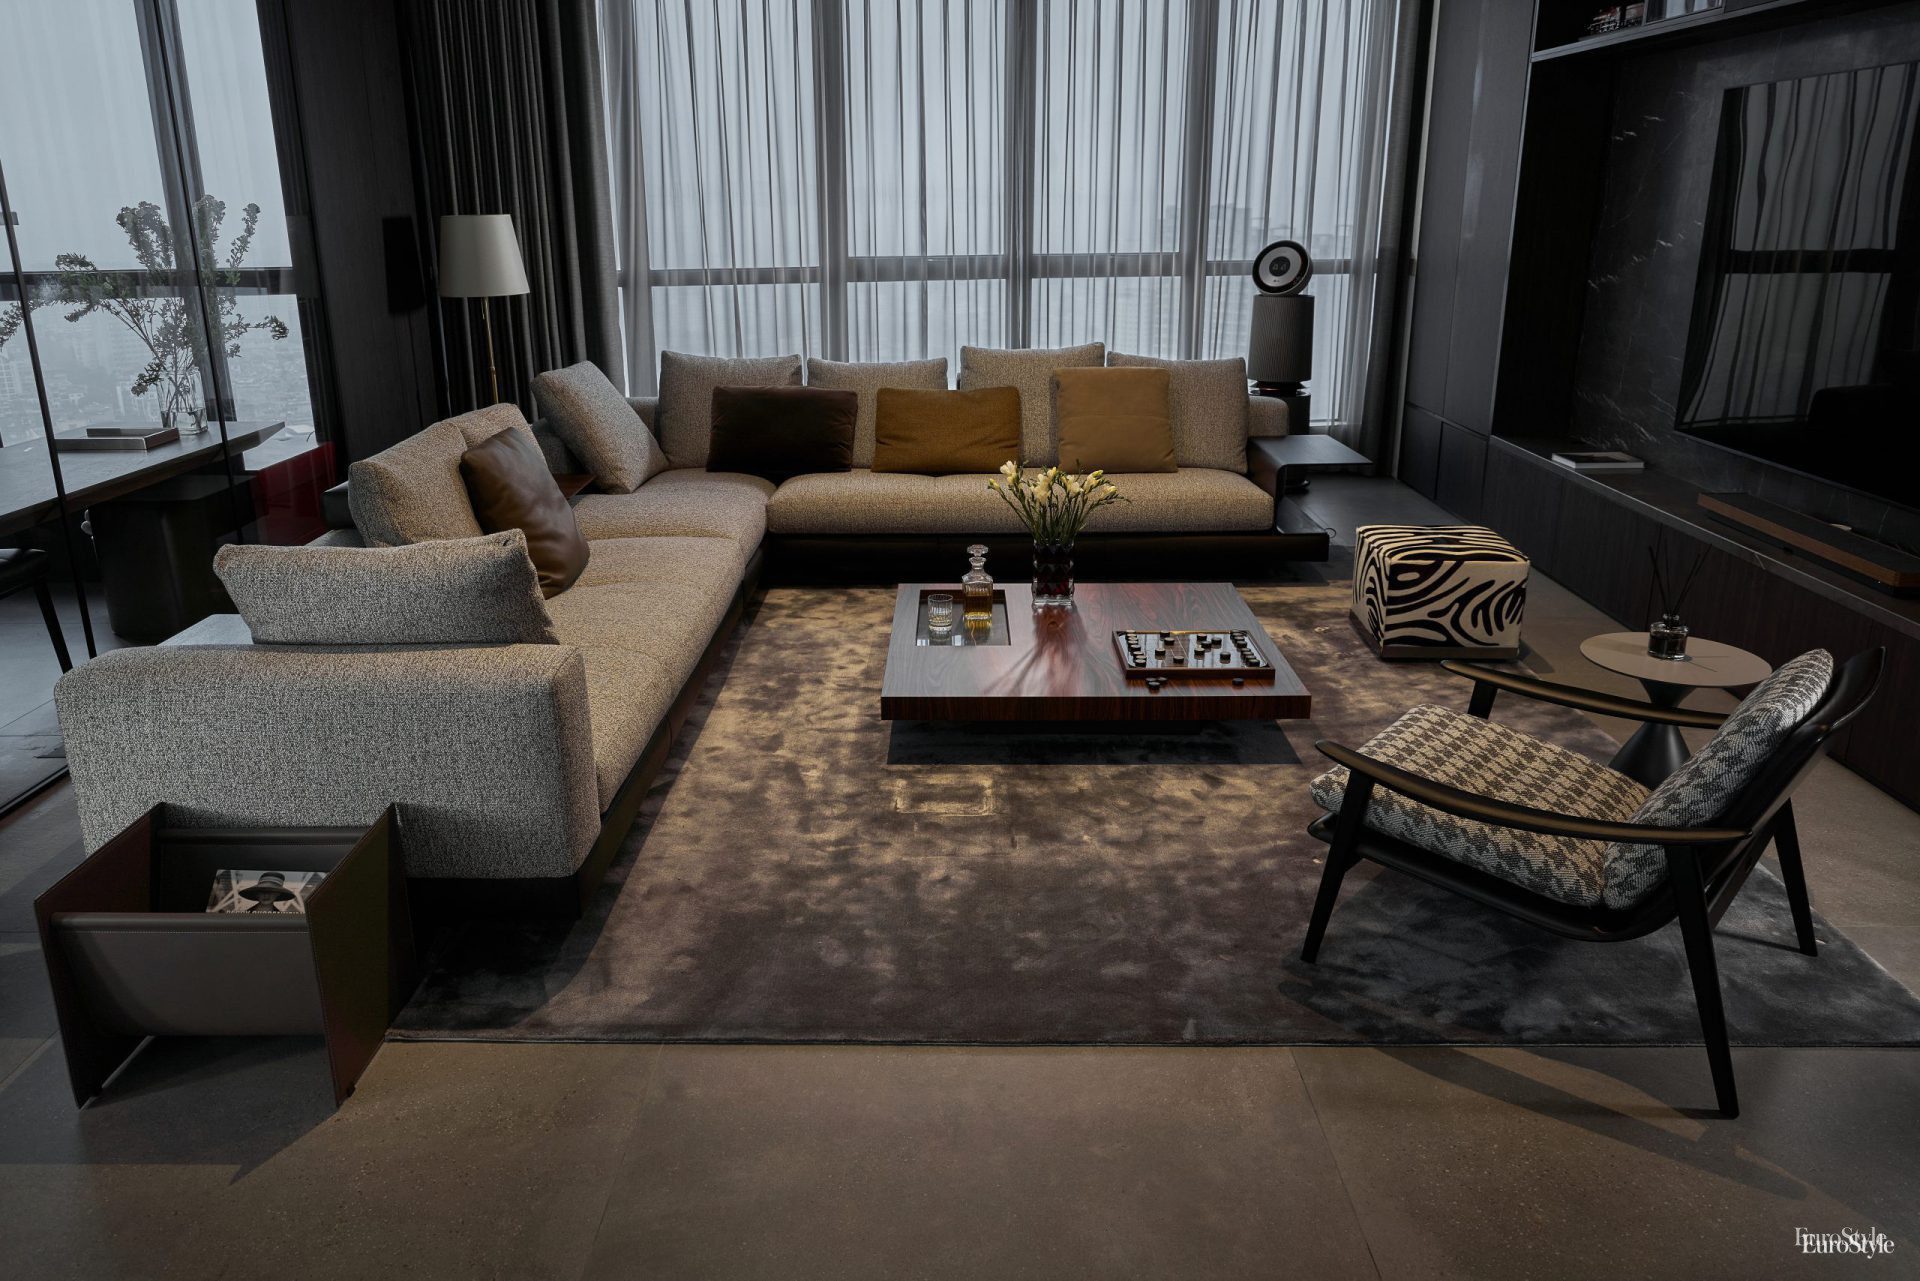 Không gian phòng khách với những sản phẩm nội thất và đồ decor tạo nên một tổng thể hoàn hảo